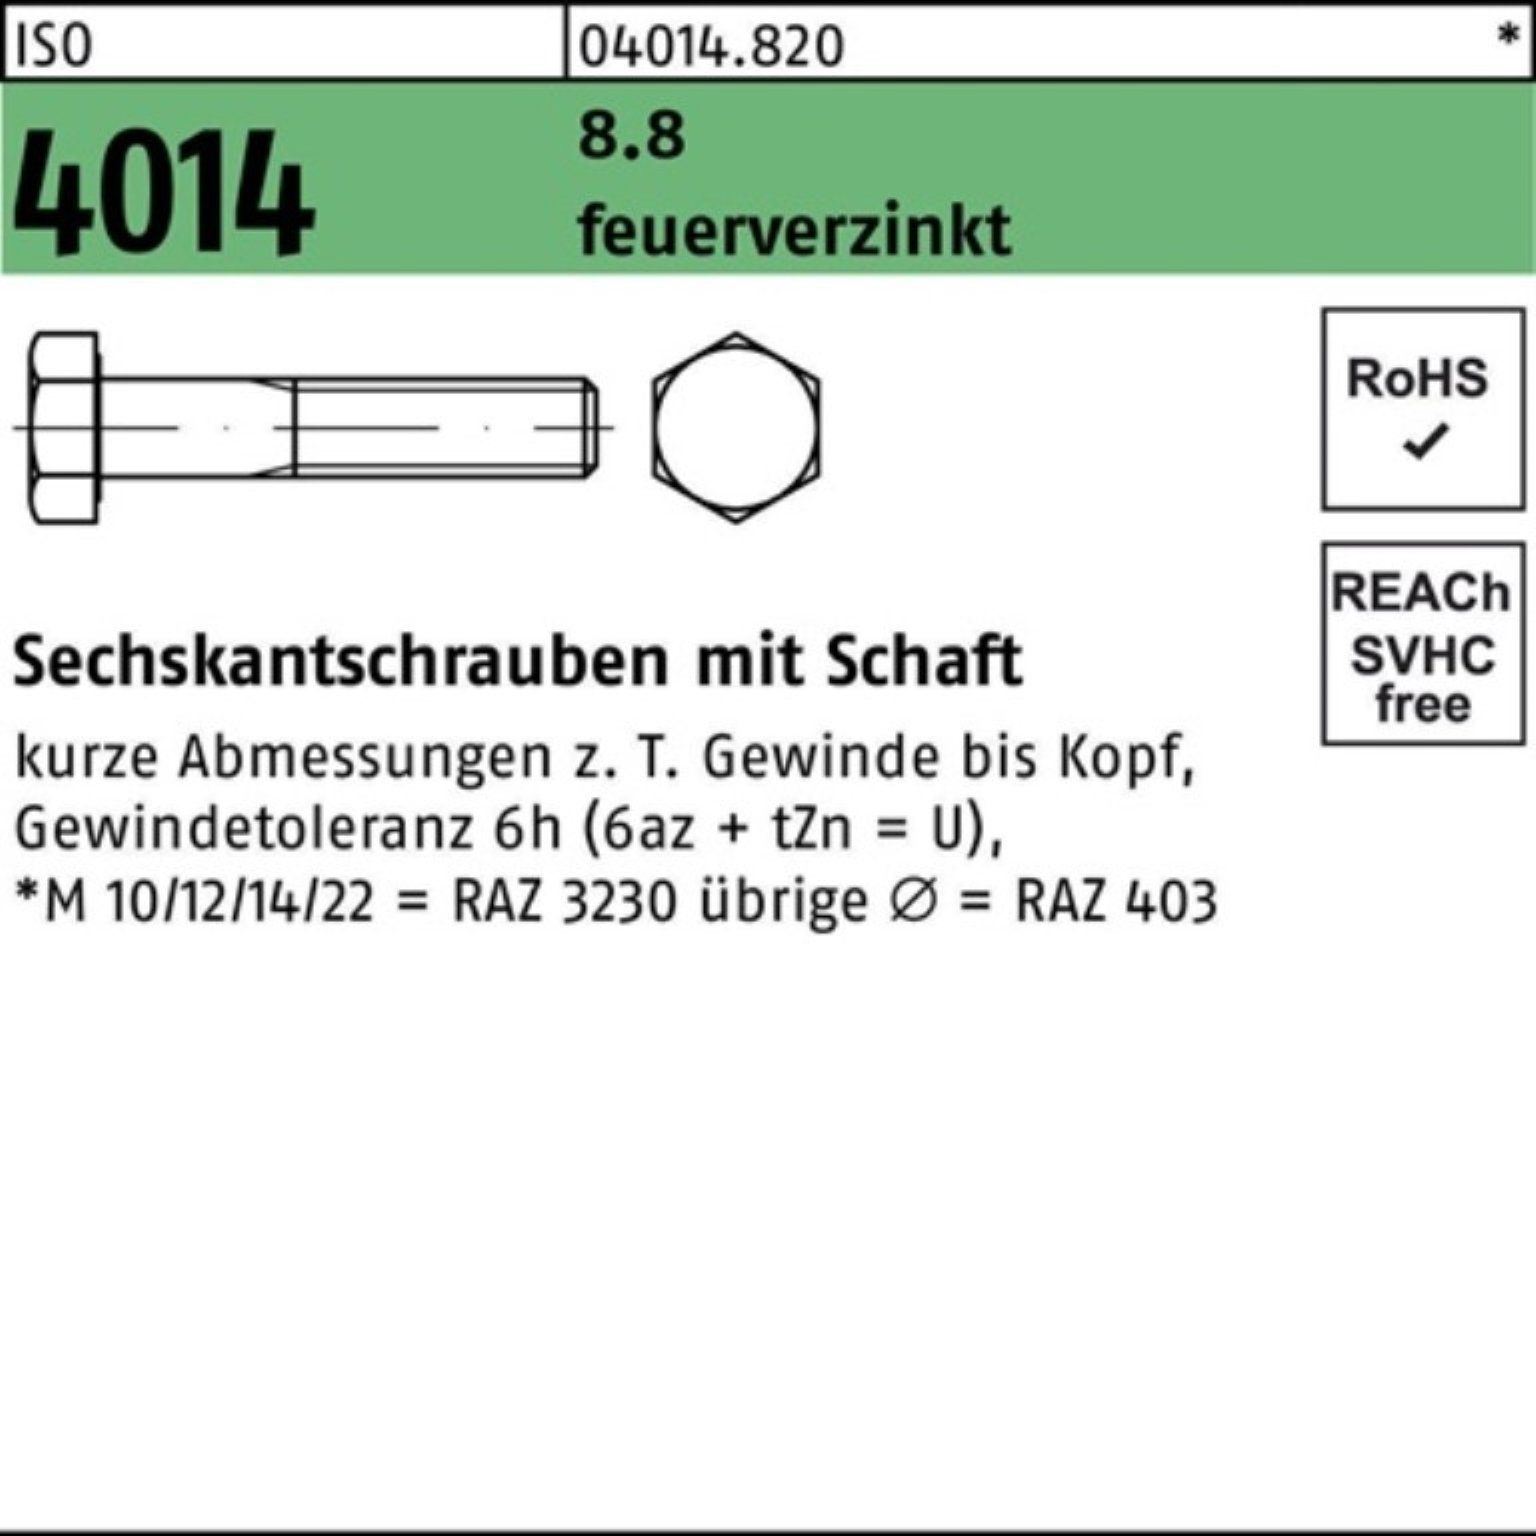 Sechskantschraube Bufab 4014 Pack 10 8.8 M24x 100er Schaft 95 ISO feuerverz. Sechskantschraube